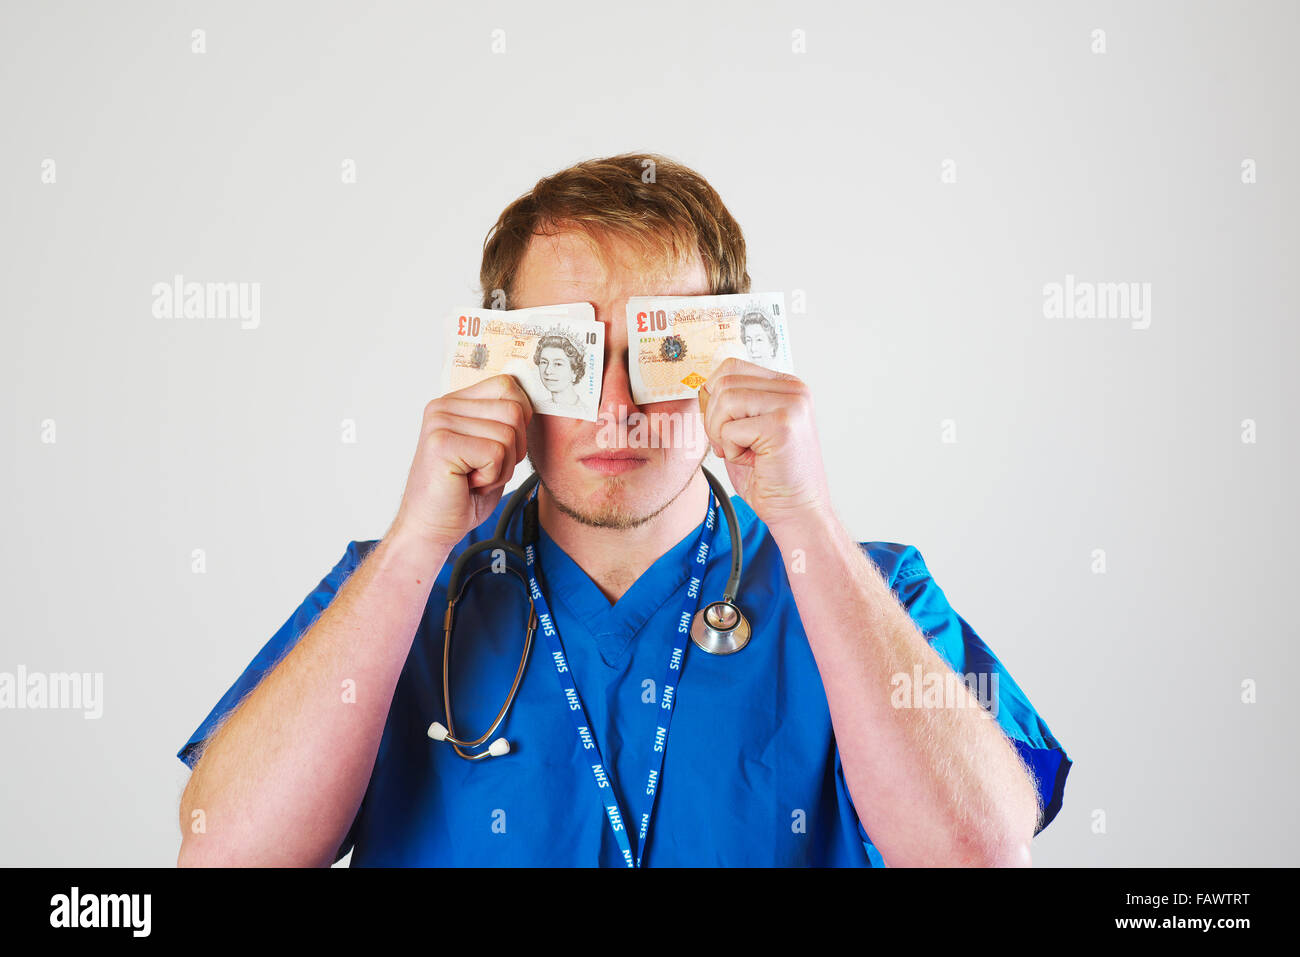 Junge weiße männliche Junioren Krankenhausarzt im Theater Blues tragen ein Stethoskop hält eine Handvoll von zehn Pfund-Noten auf sein Gesicht Stockfoto